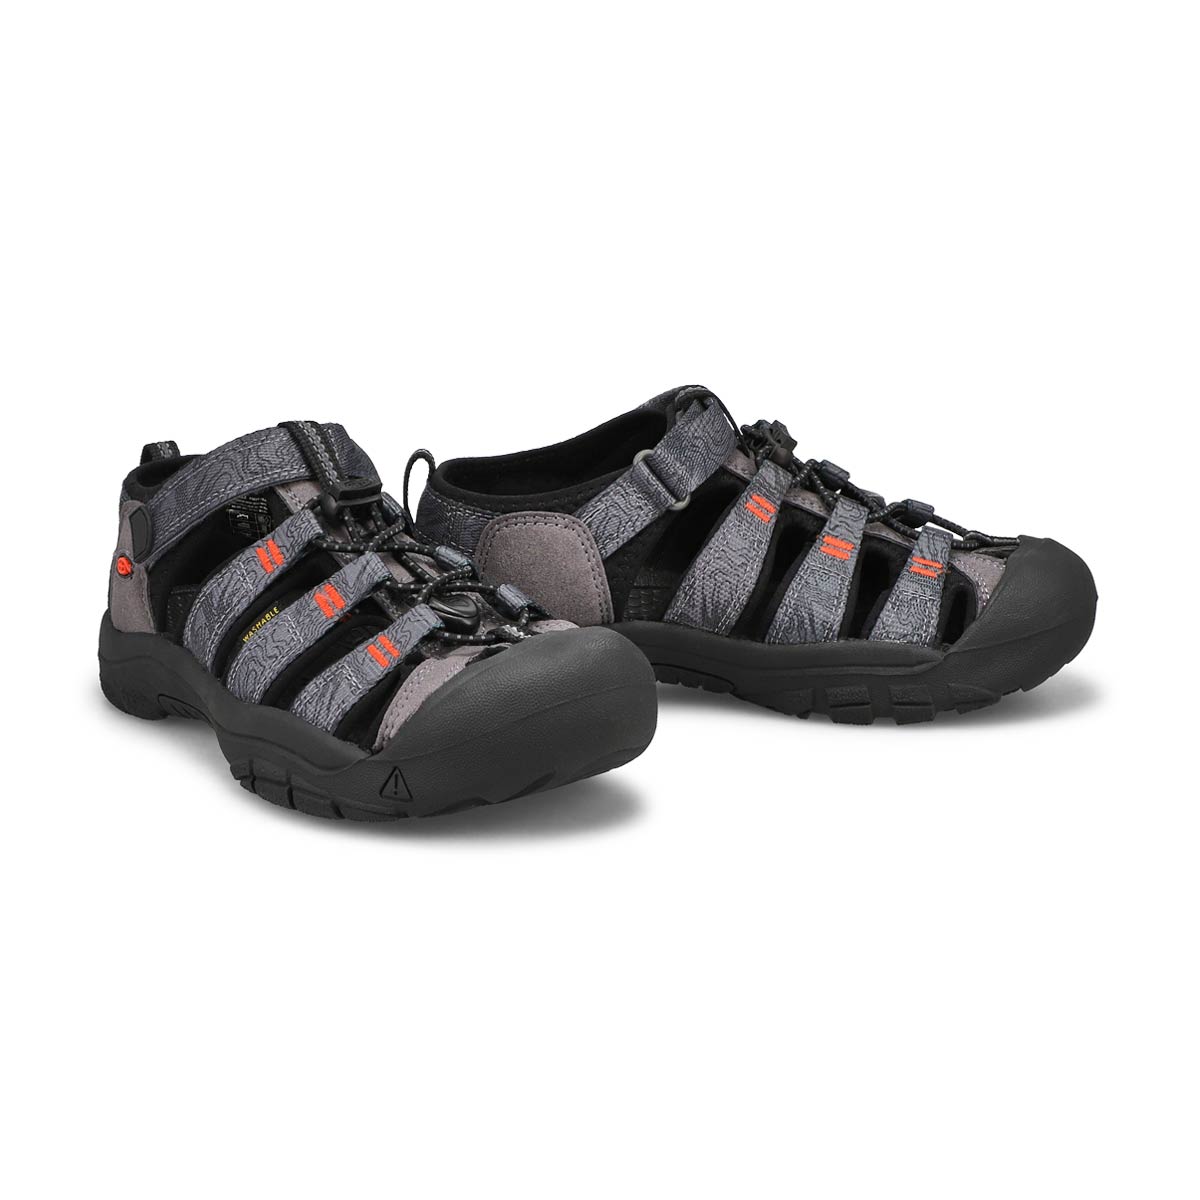 Sandale NEWPORT H2, gris acier/noir, garçons